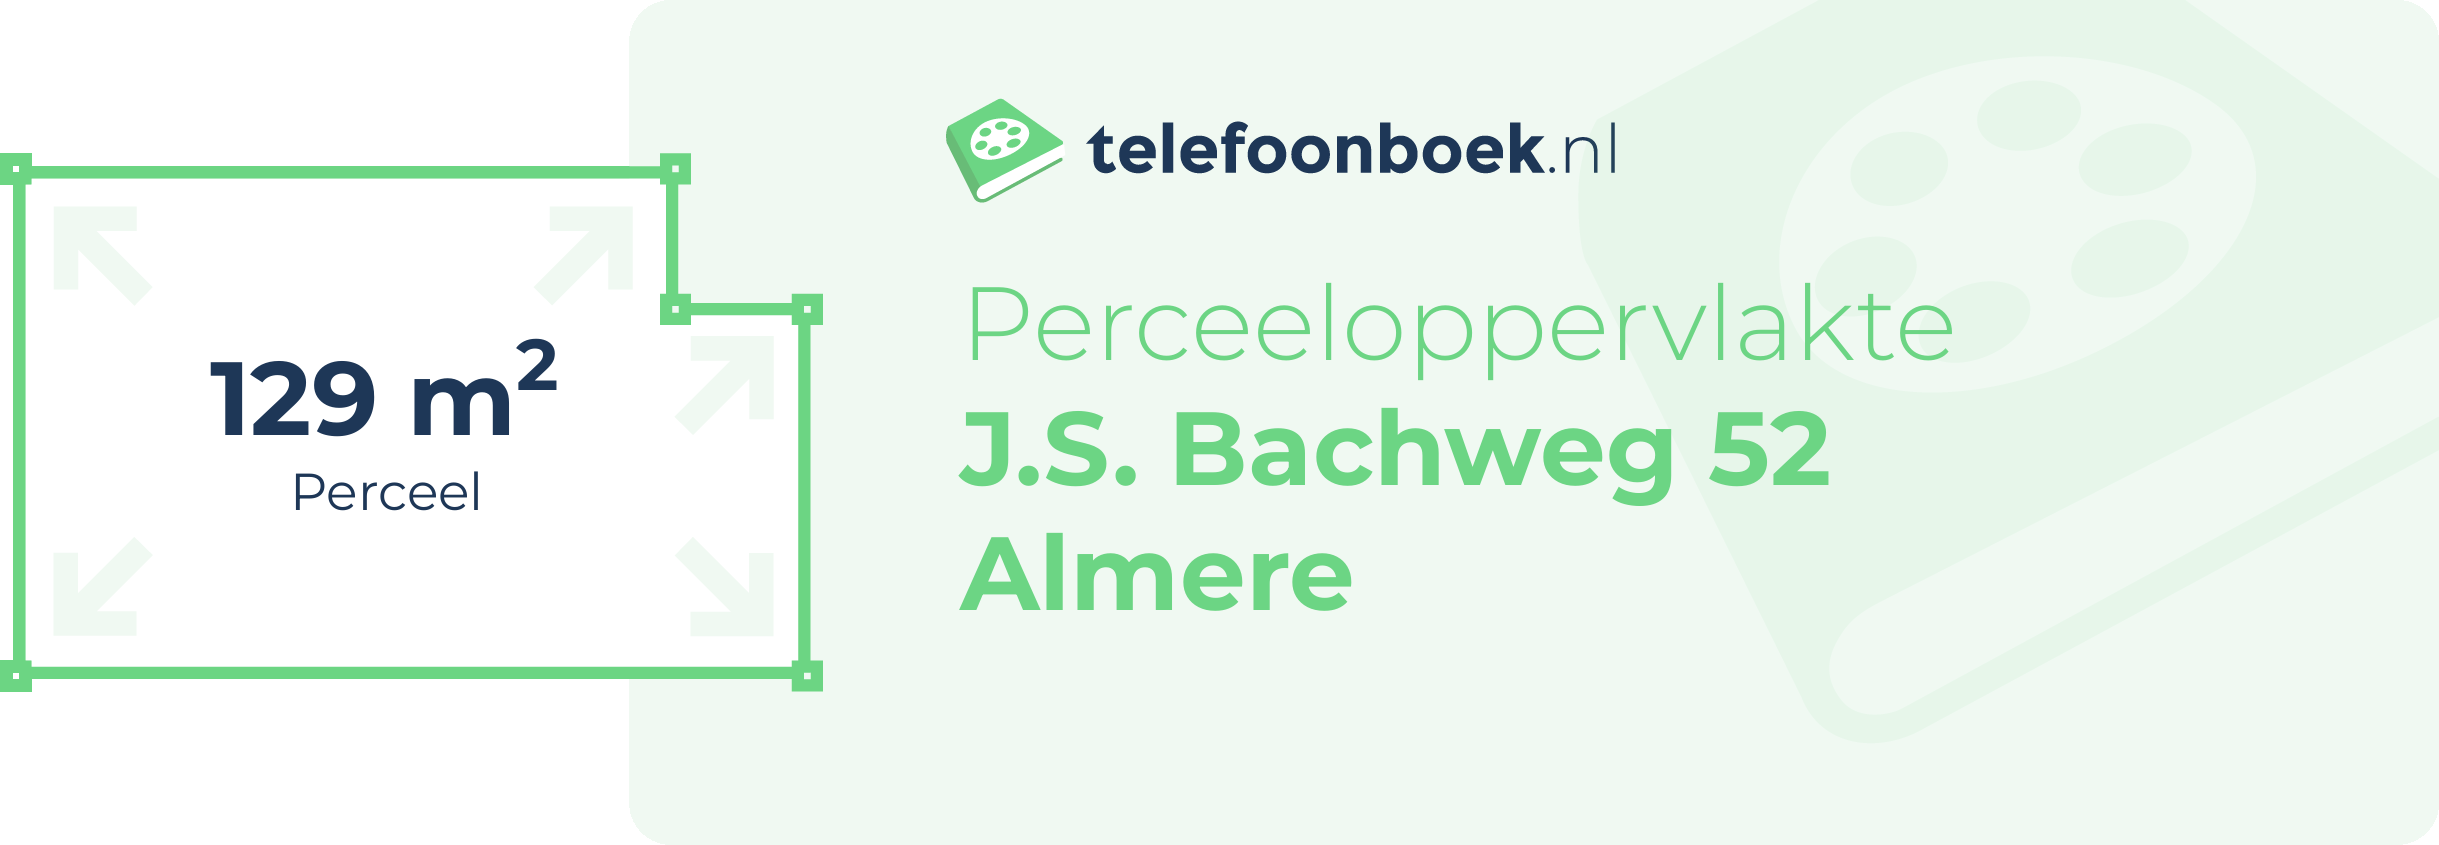 Perceeloppervlakte J.S. Bachweg 52 Almere